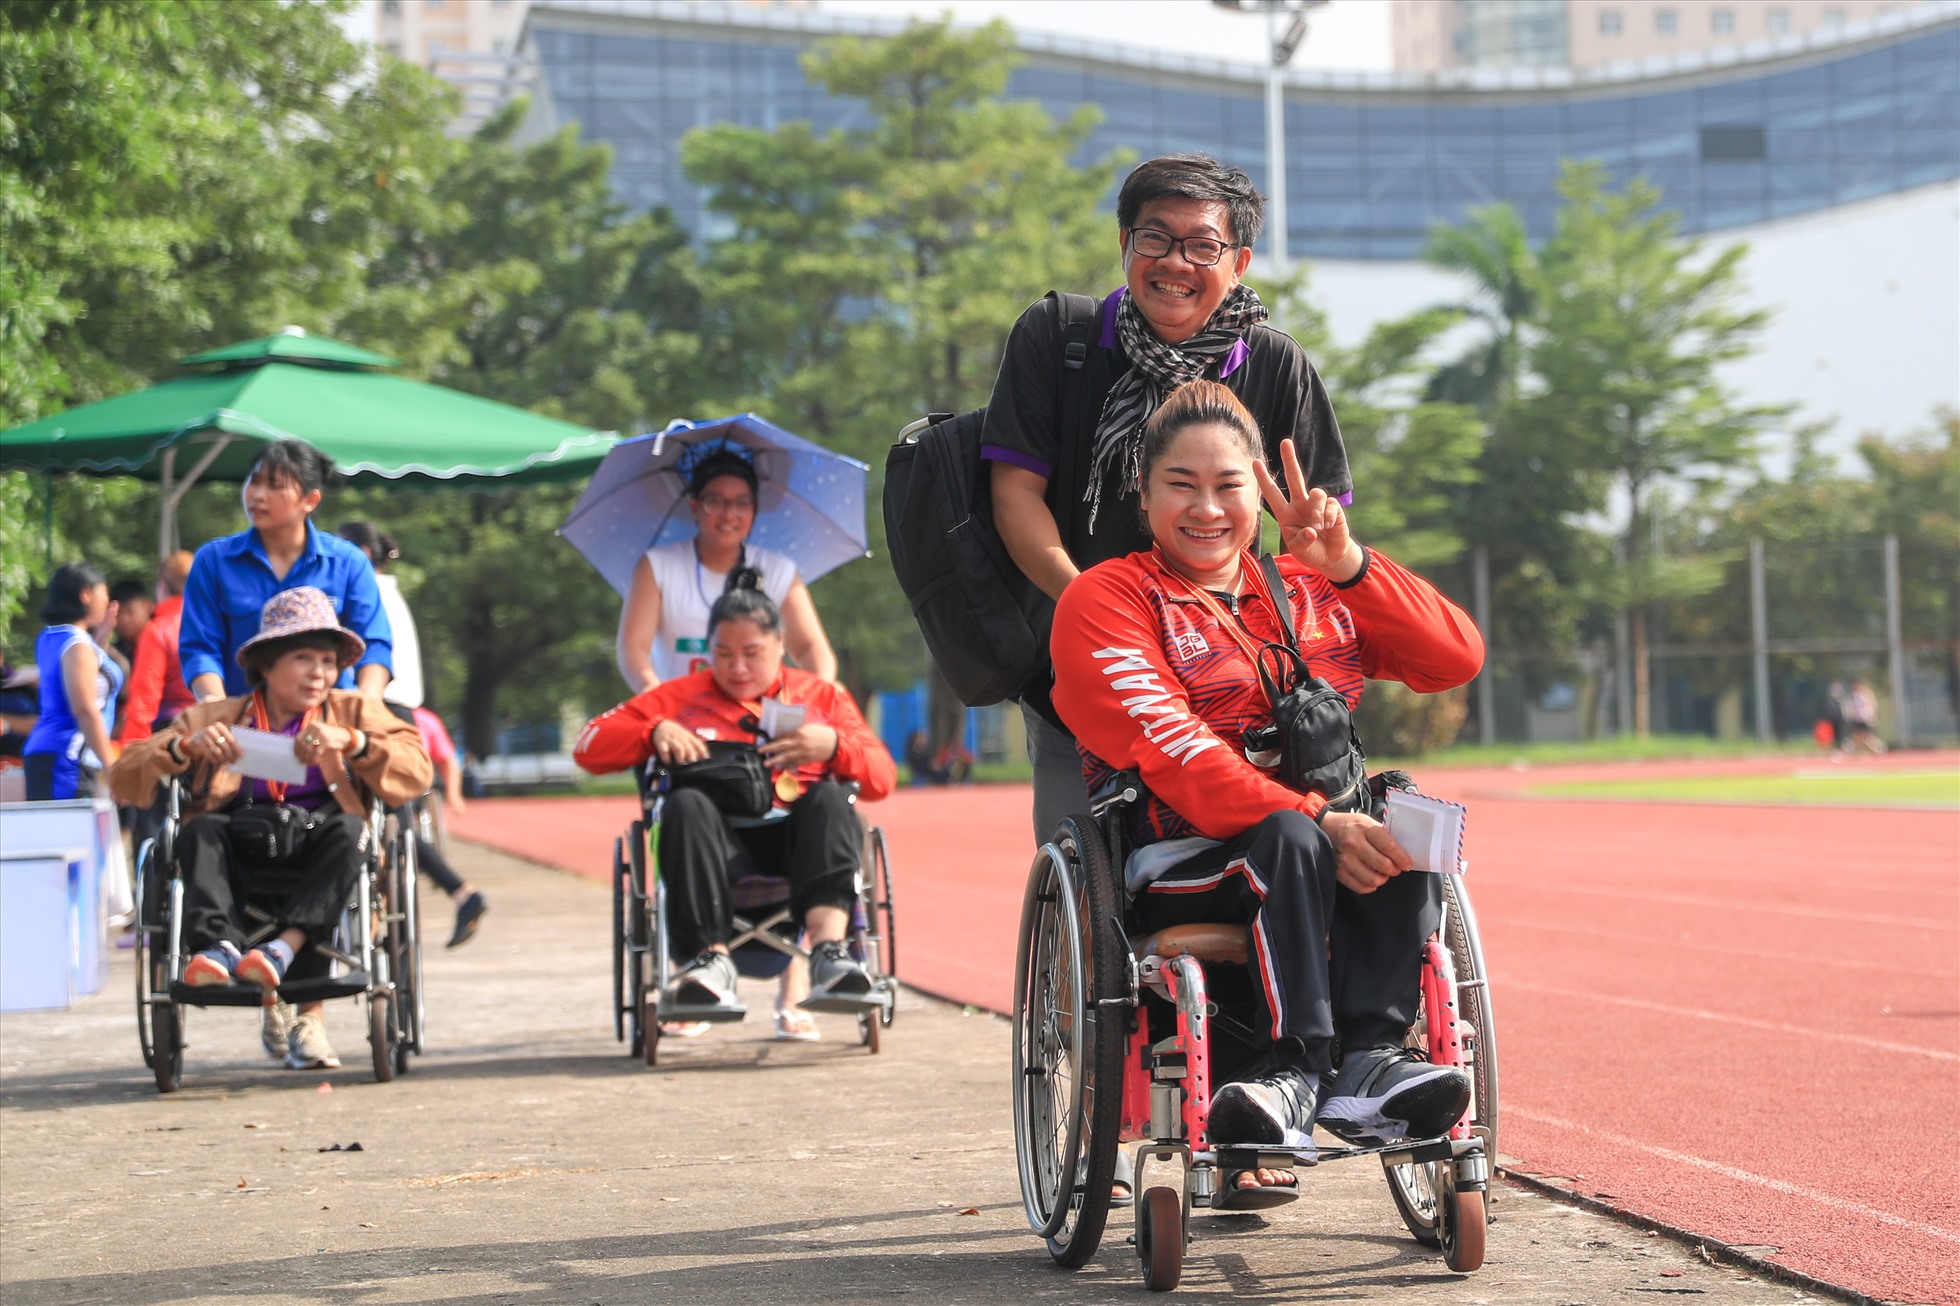 Giải vô địch điền kinh người khuyết tật toàn quốc 2022 khởi tranh từ ngày 10.9 đến 16.9 tại Hà Nội. Giải đấu quy tụ hơn 400 vận động viên từ 17 tỉnh thành trên cả nước (bao gồm cả bộ môn bơi) tham gia tranh tài.